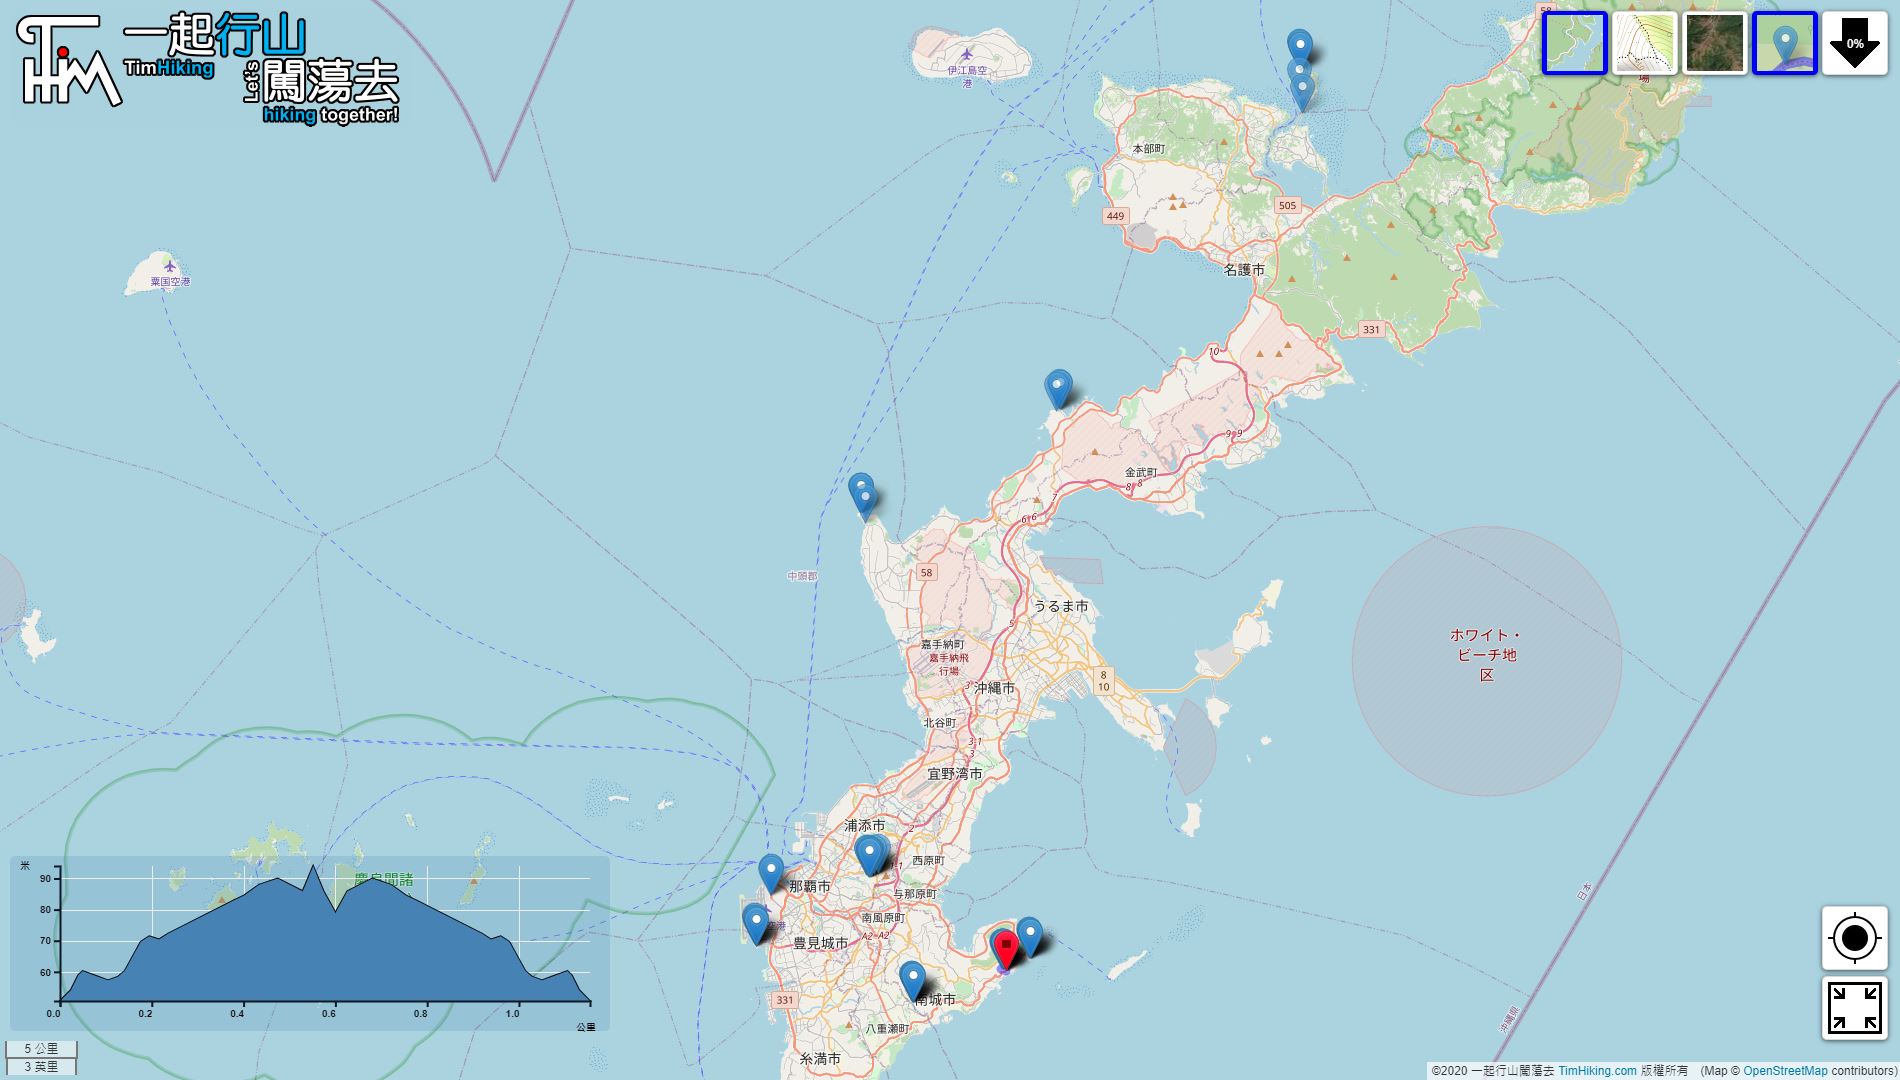 “冲绳 环岛游”路线地图